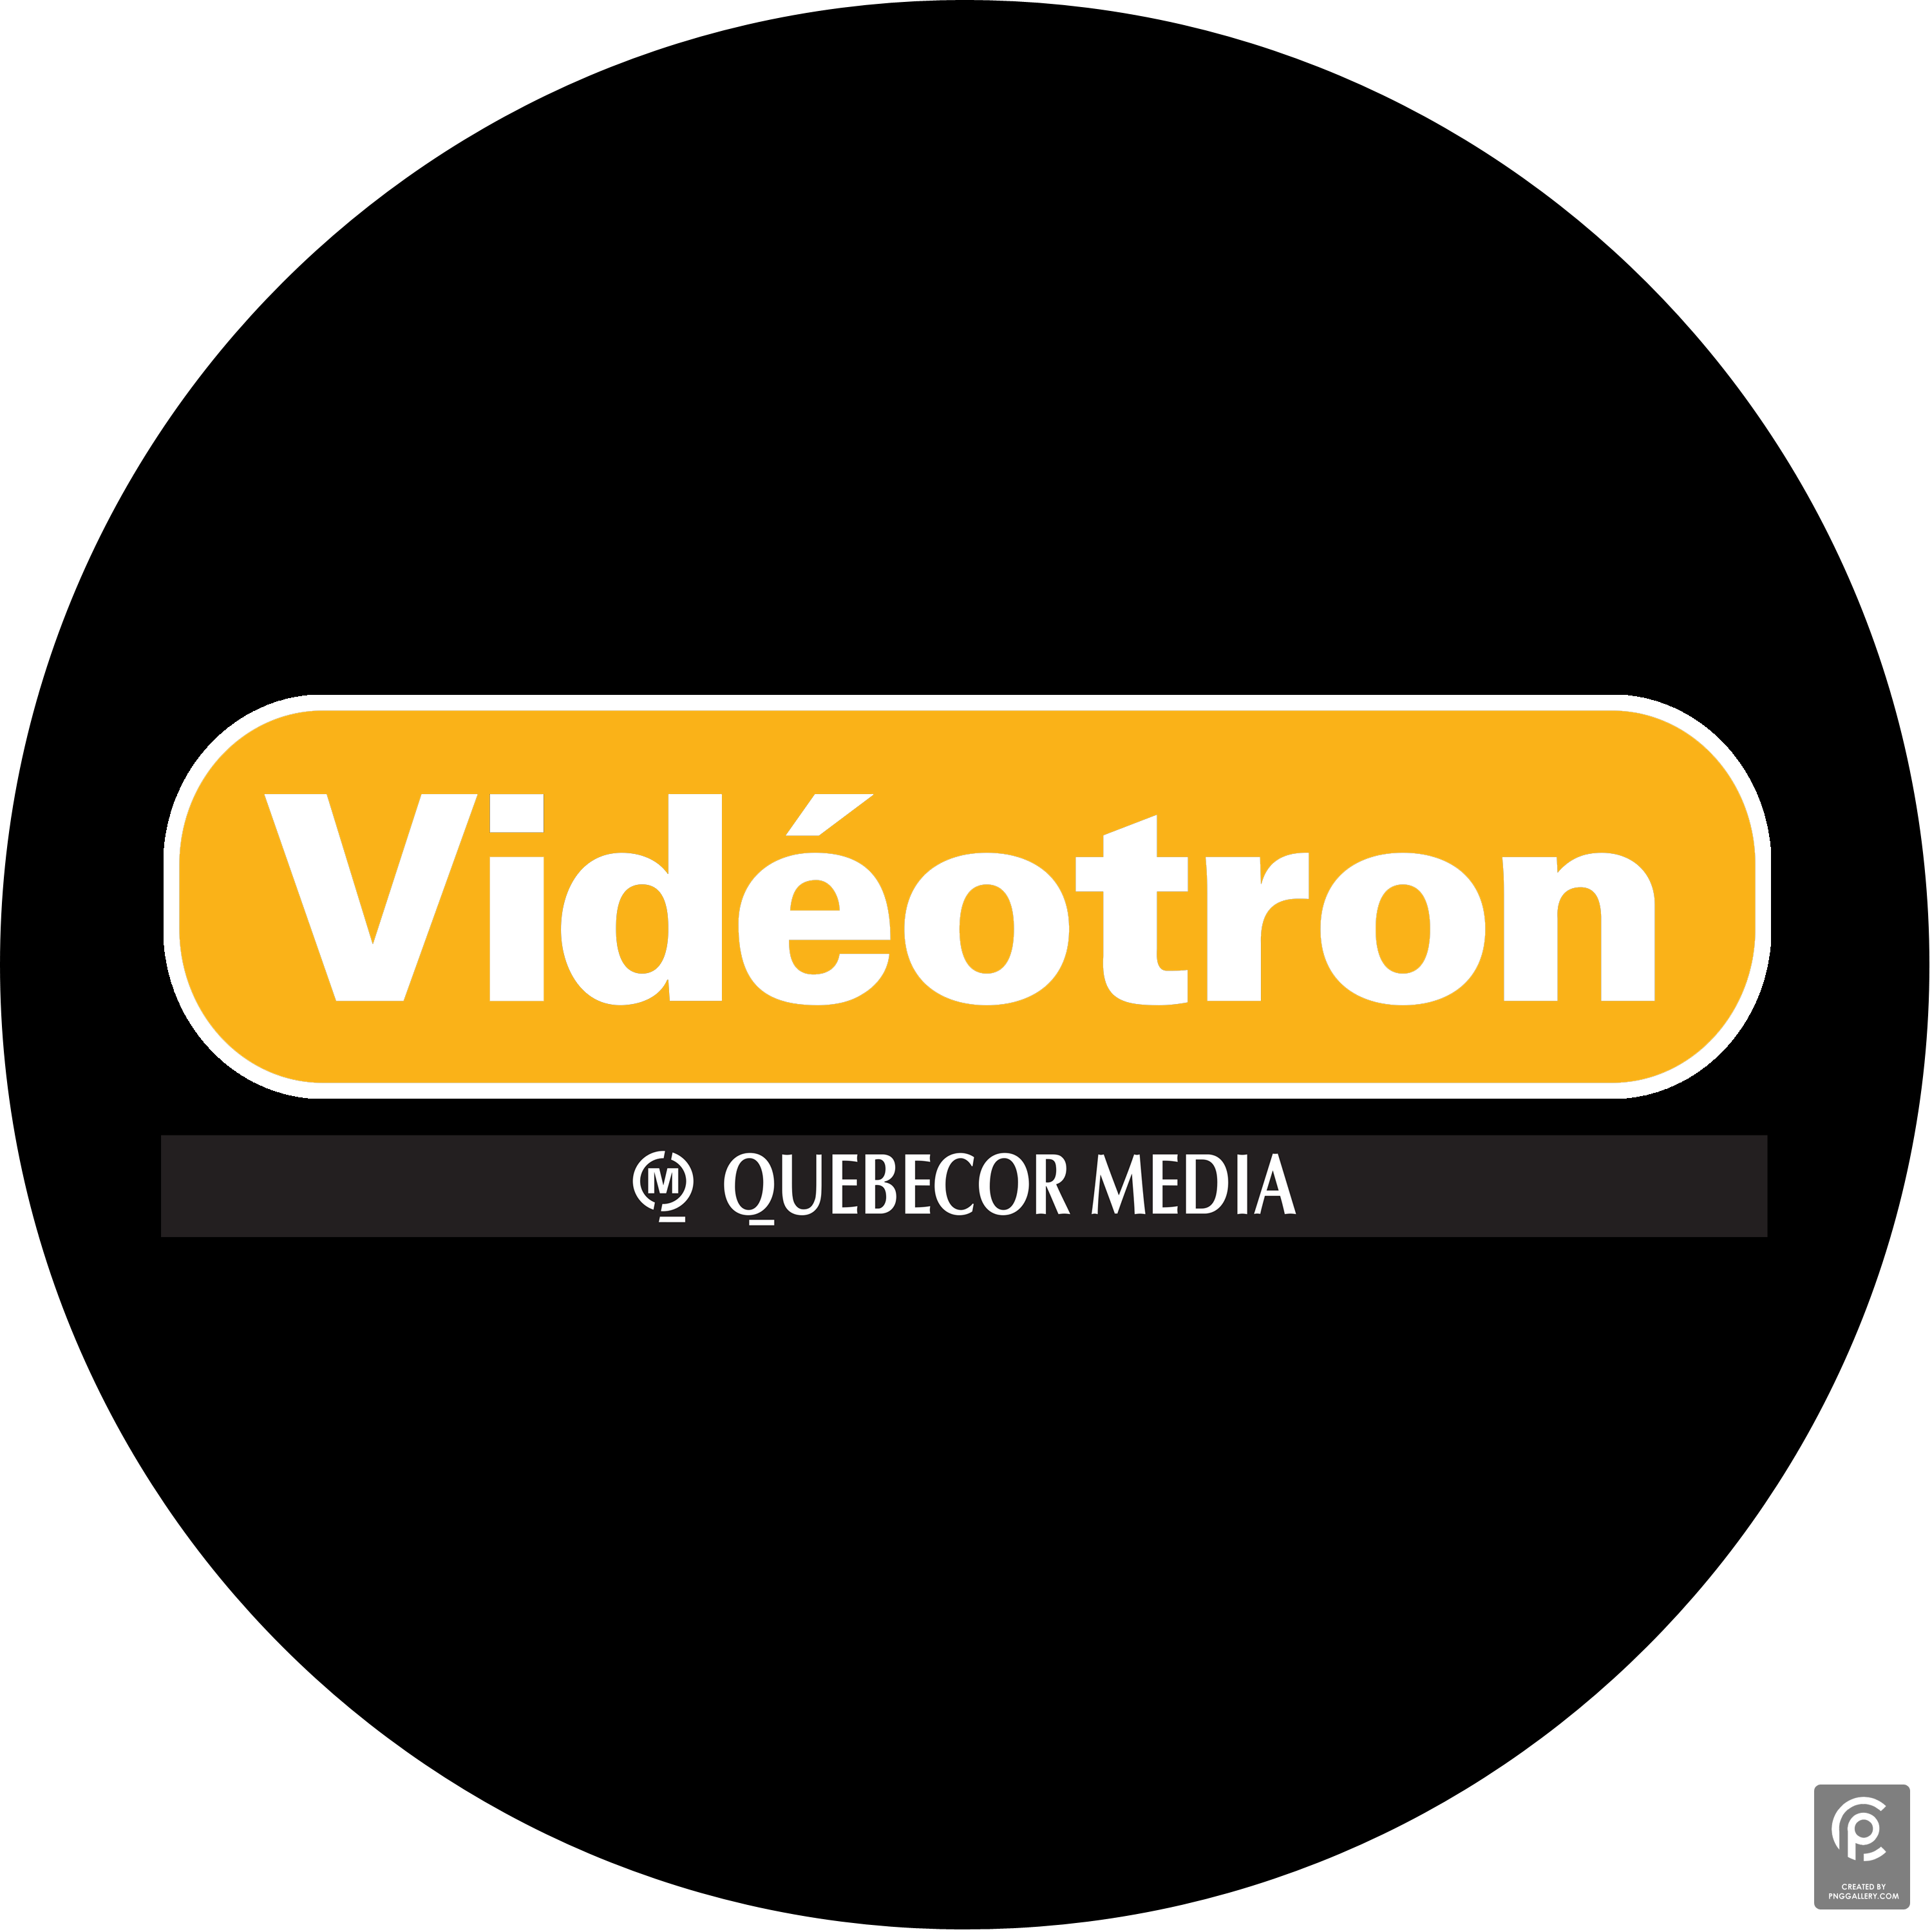 Videotron Logo 2002 Transparent Clipart